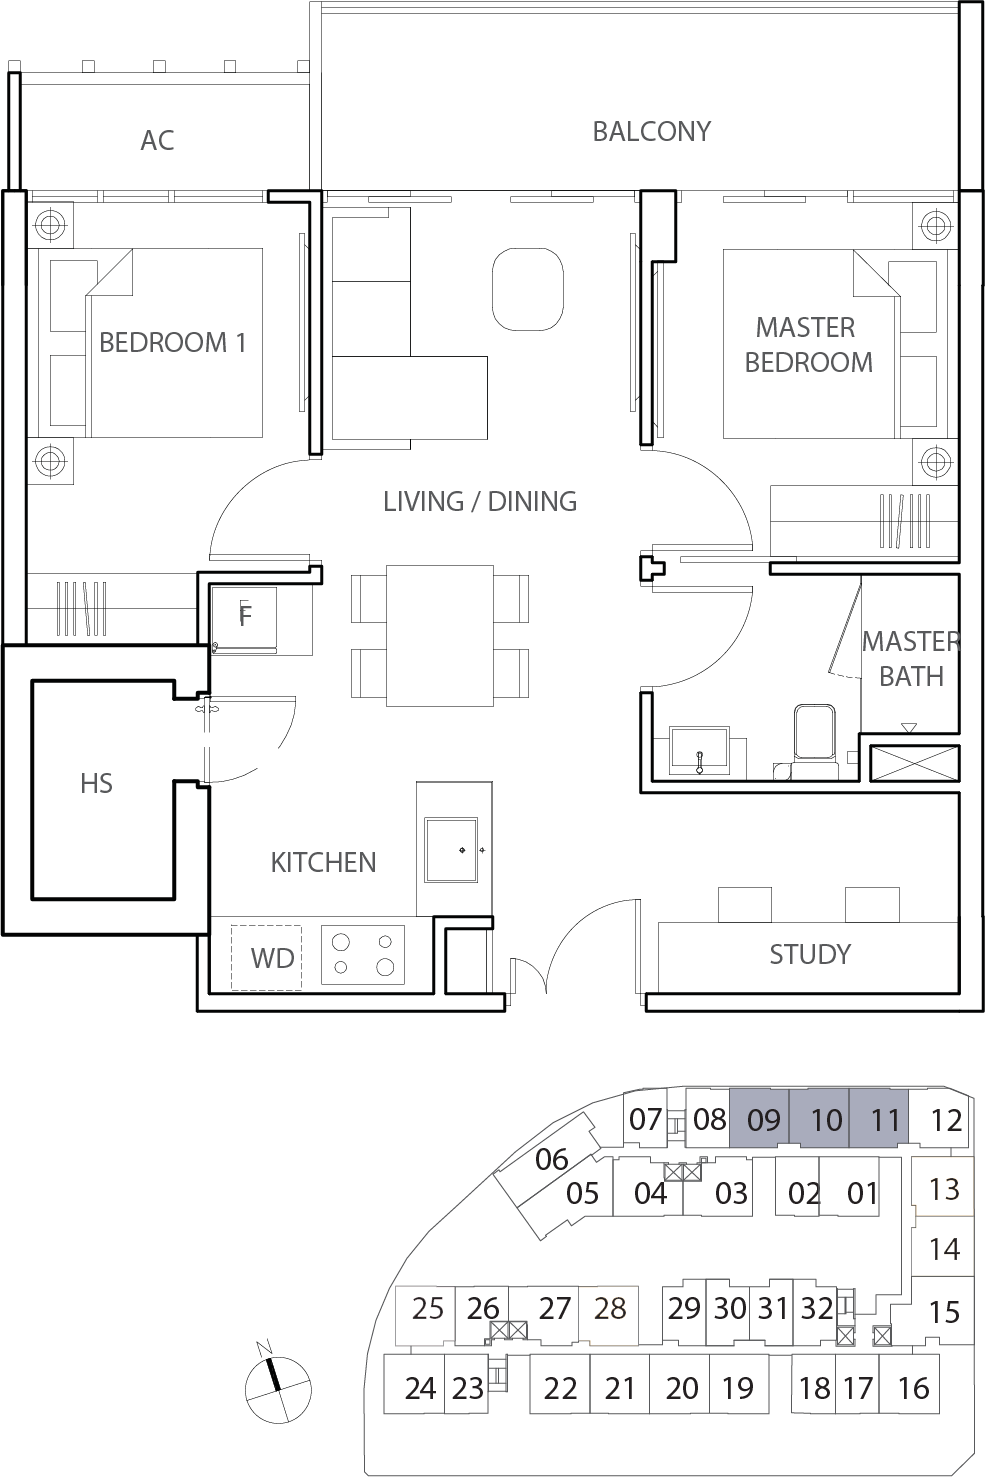 Floor Plan for Residential Type B3